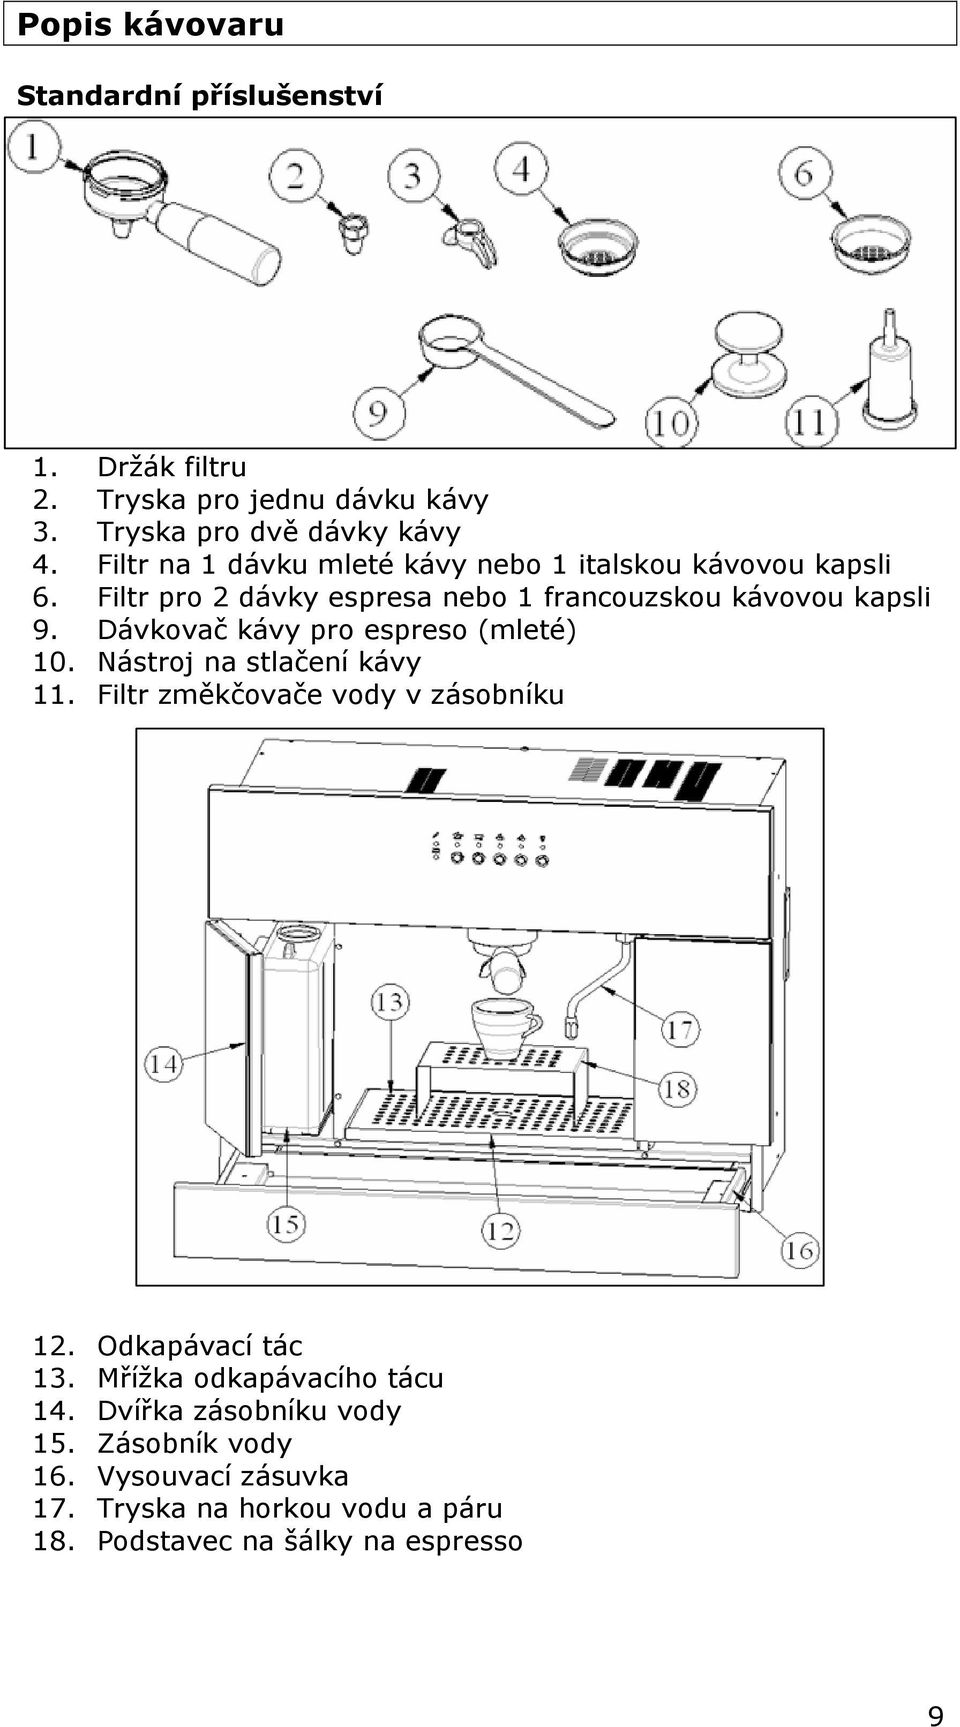 Dávkovač kávy pro espreso (mleté) 10. Nástroj na stlačení kávy 11. Filtr změkčovače vody v zásobníku 12. Odkapávací tác 13.